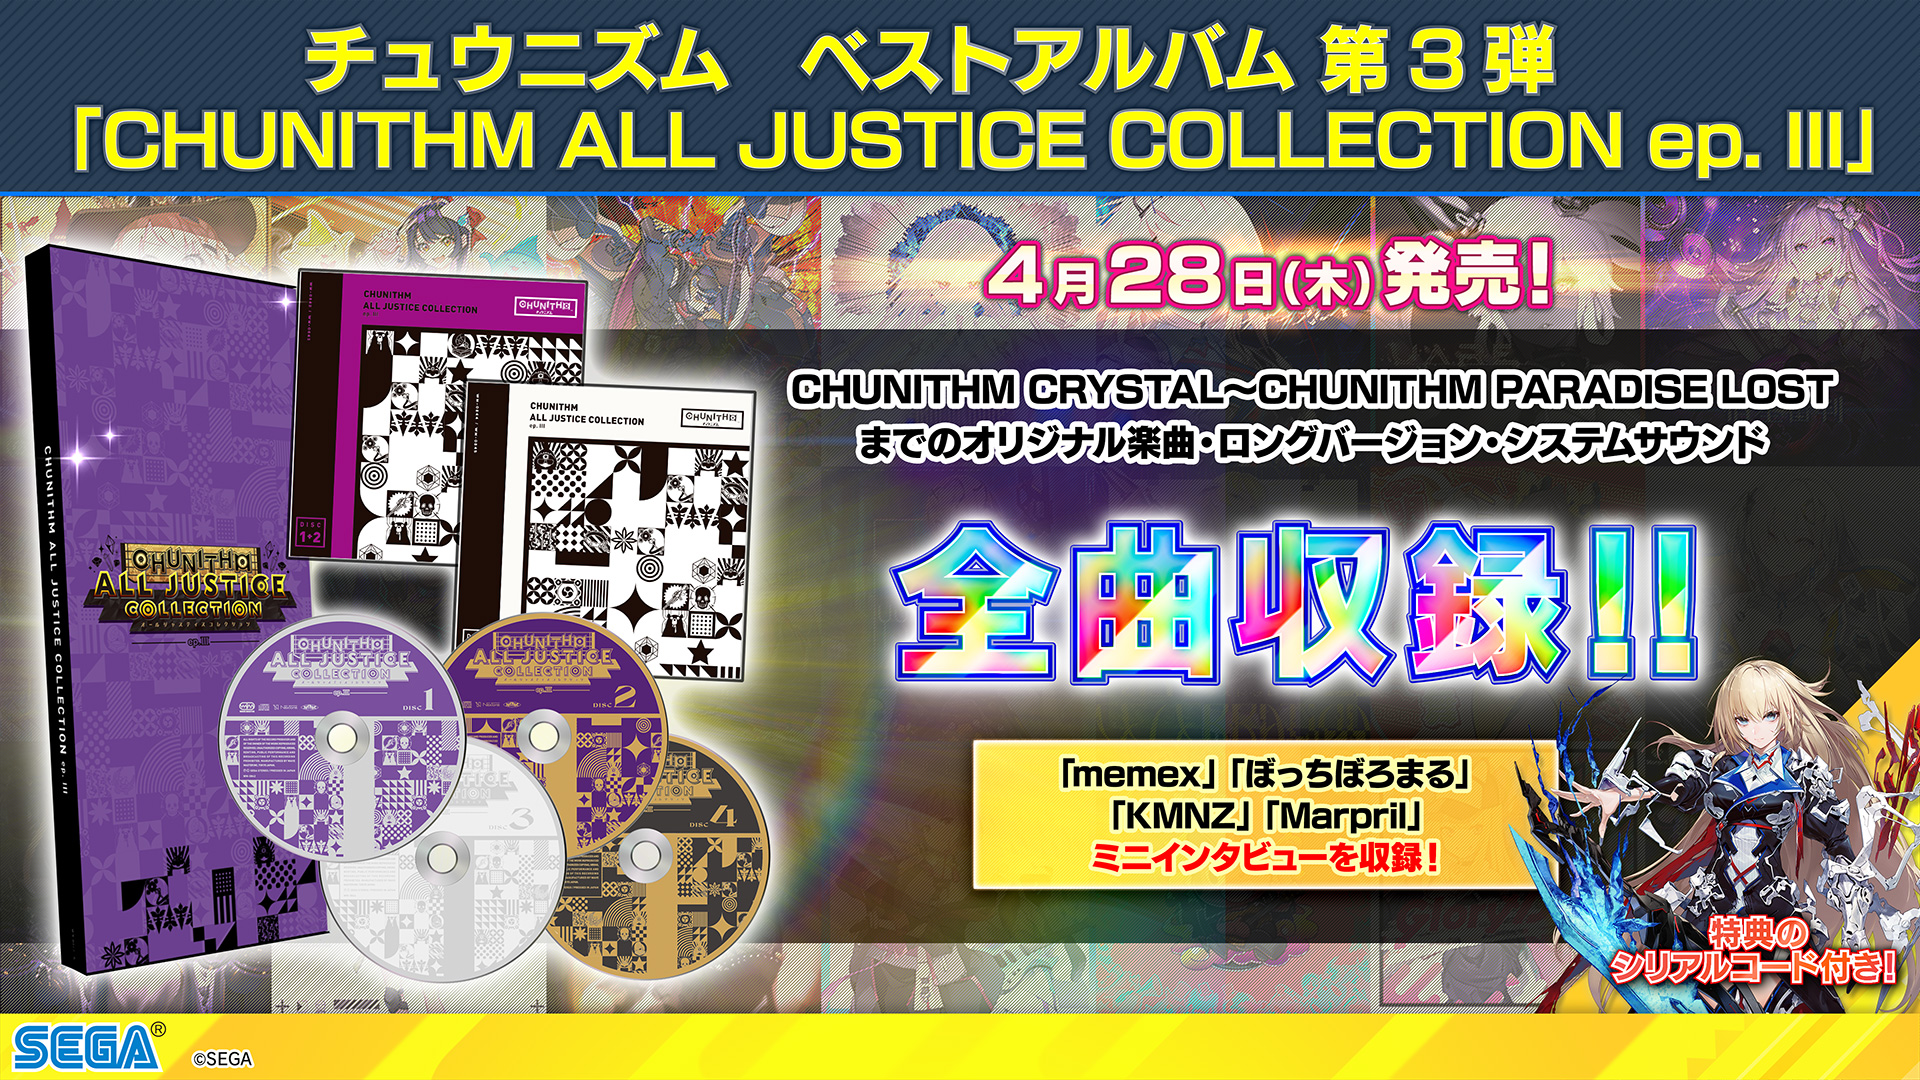 4/28(木) ベストアルバム第3弾『CHUNITHM ALL JUSTICE COLLECTION ep 